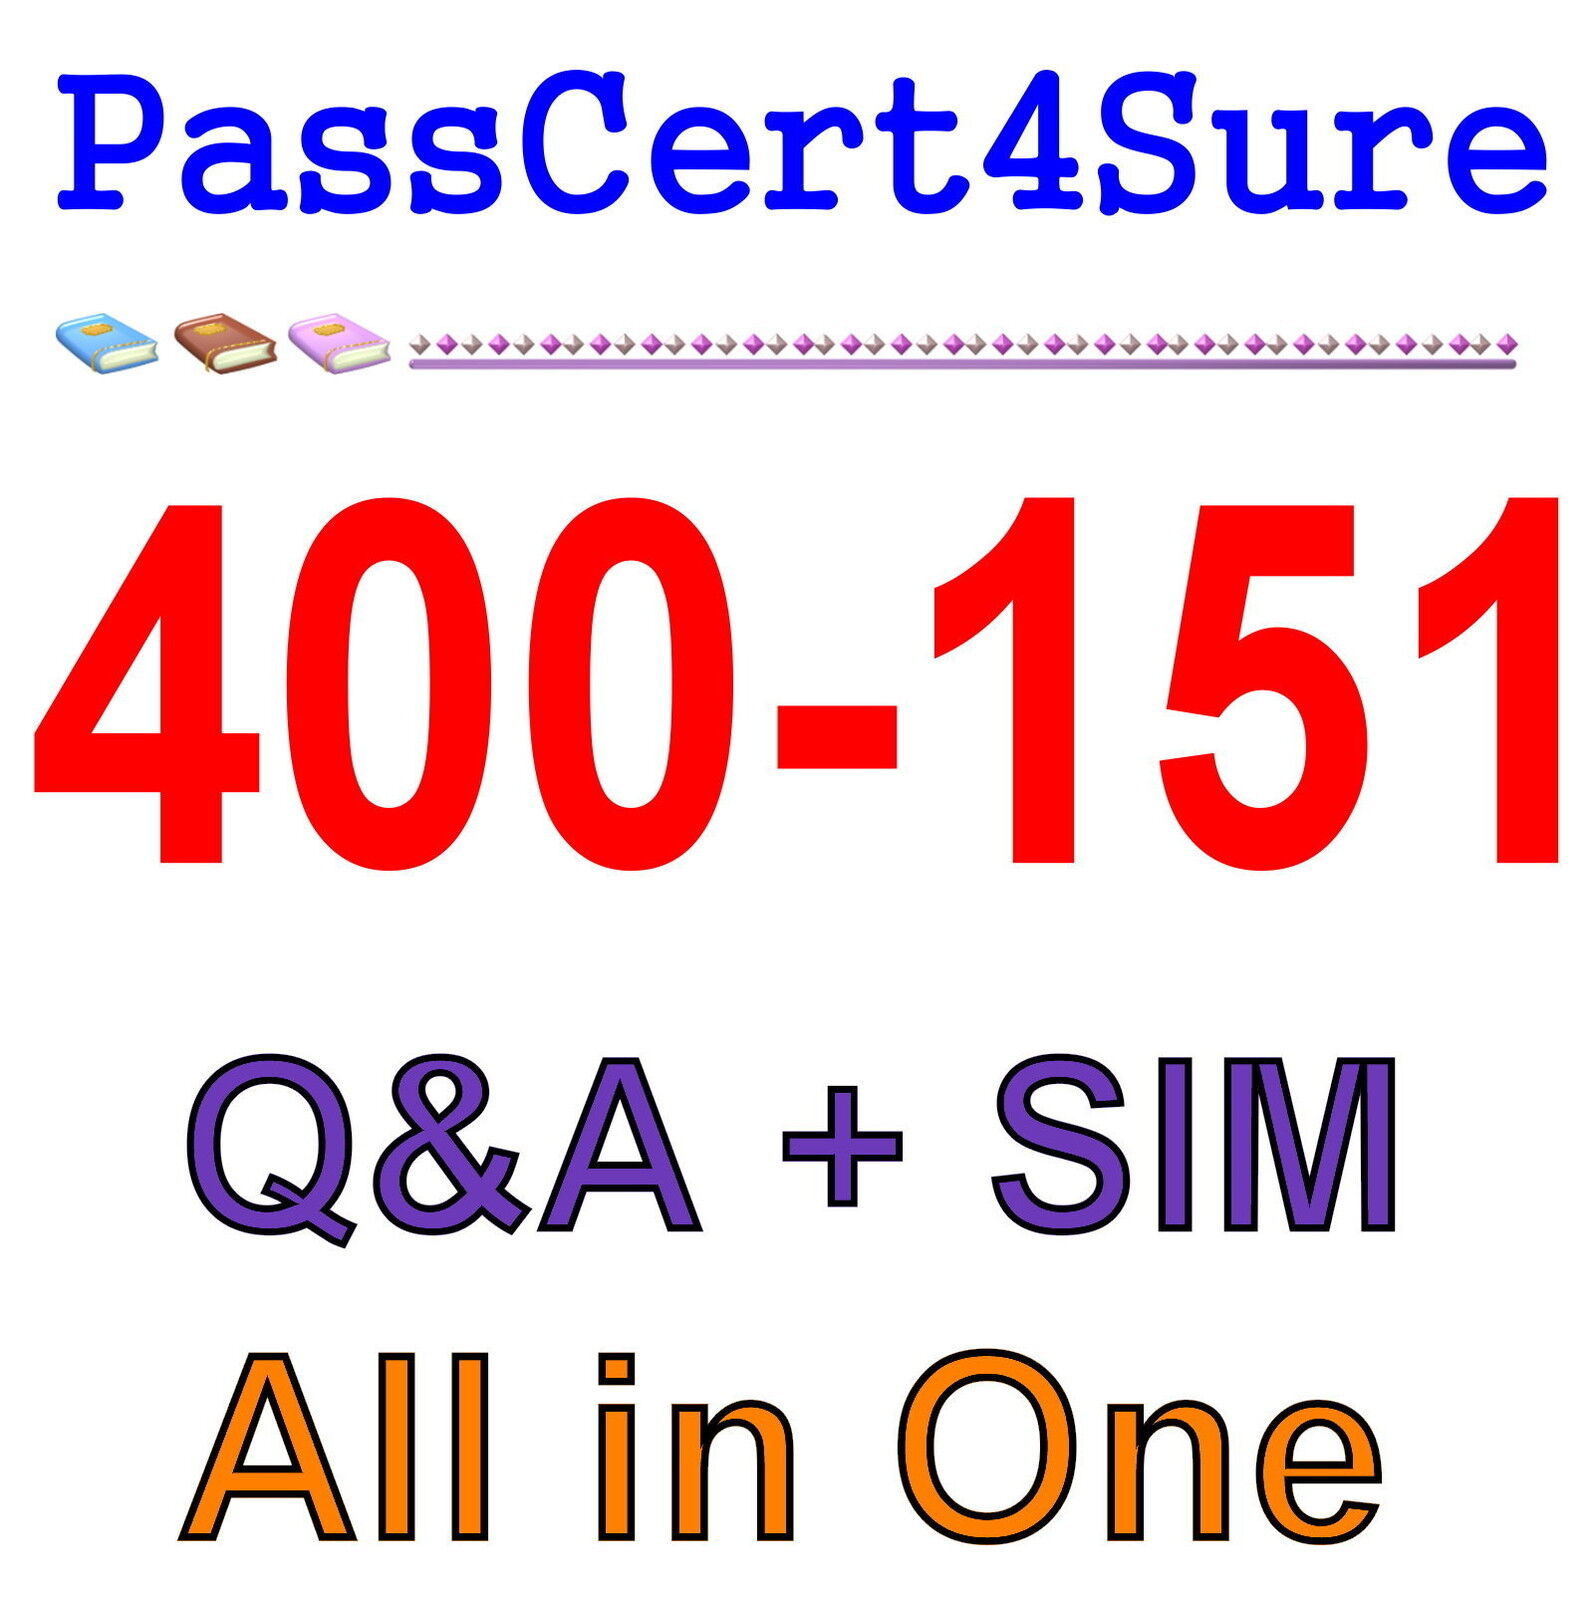 Cisco Best Practice Material For 400-151 Exam Q&A+SIM